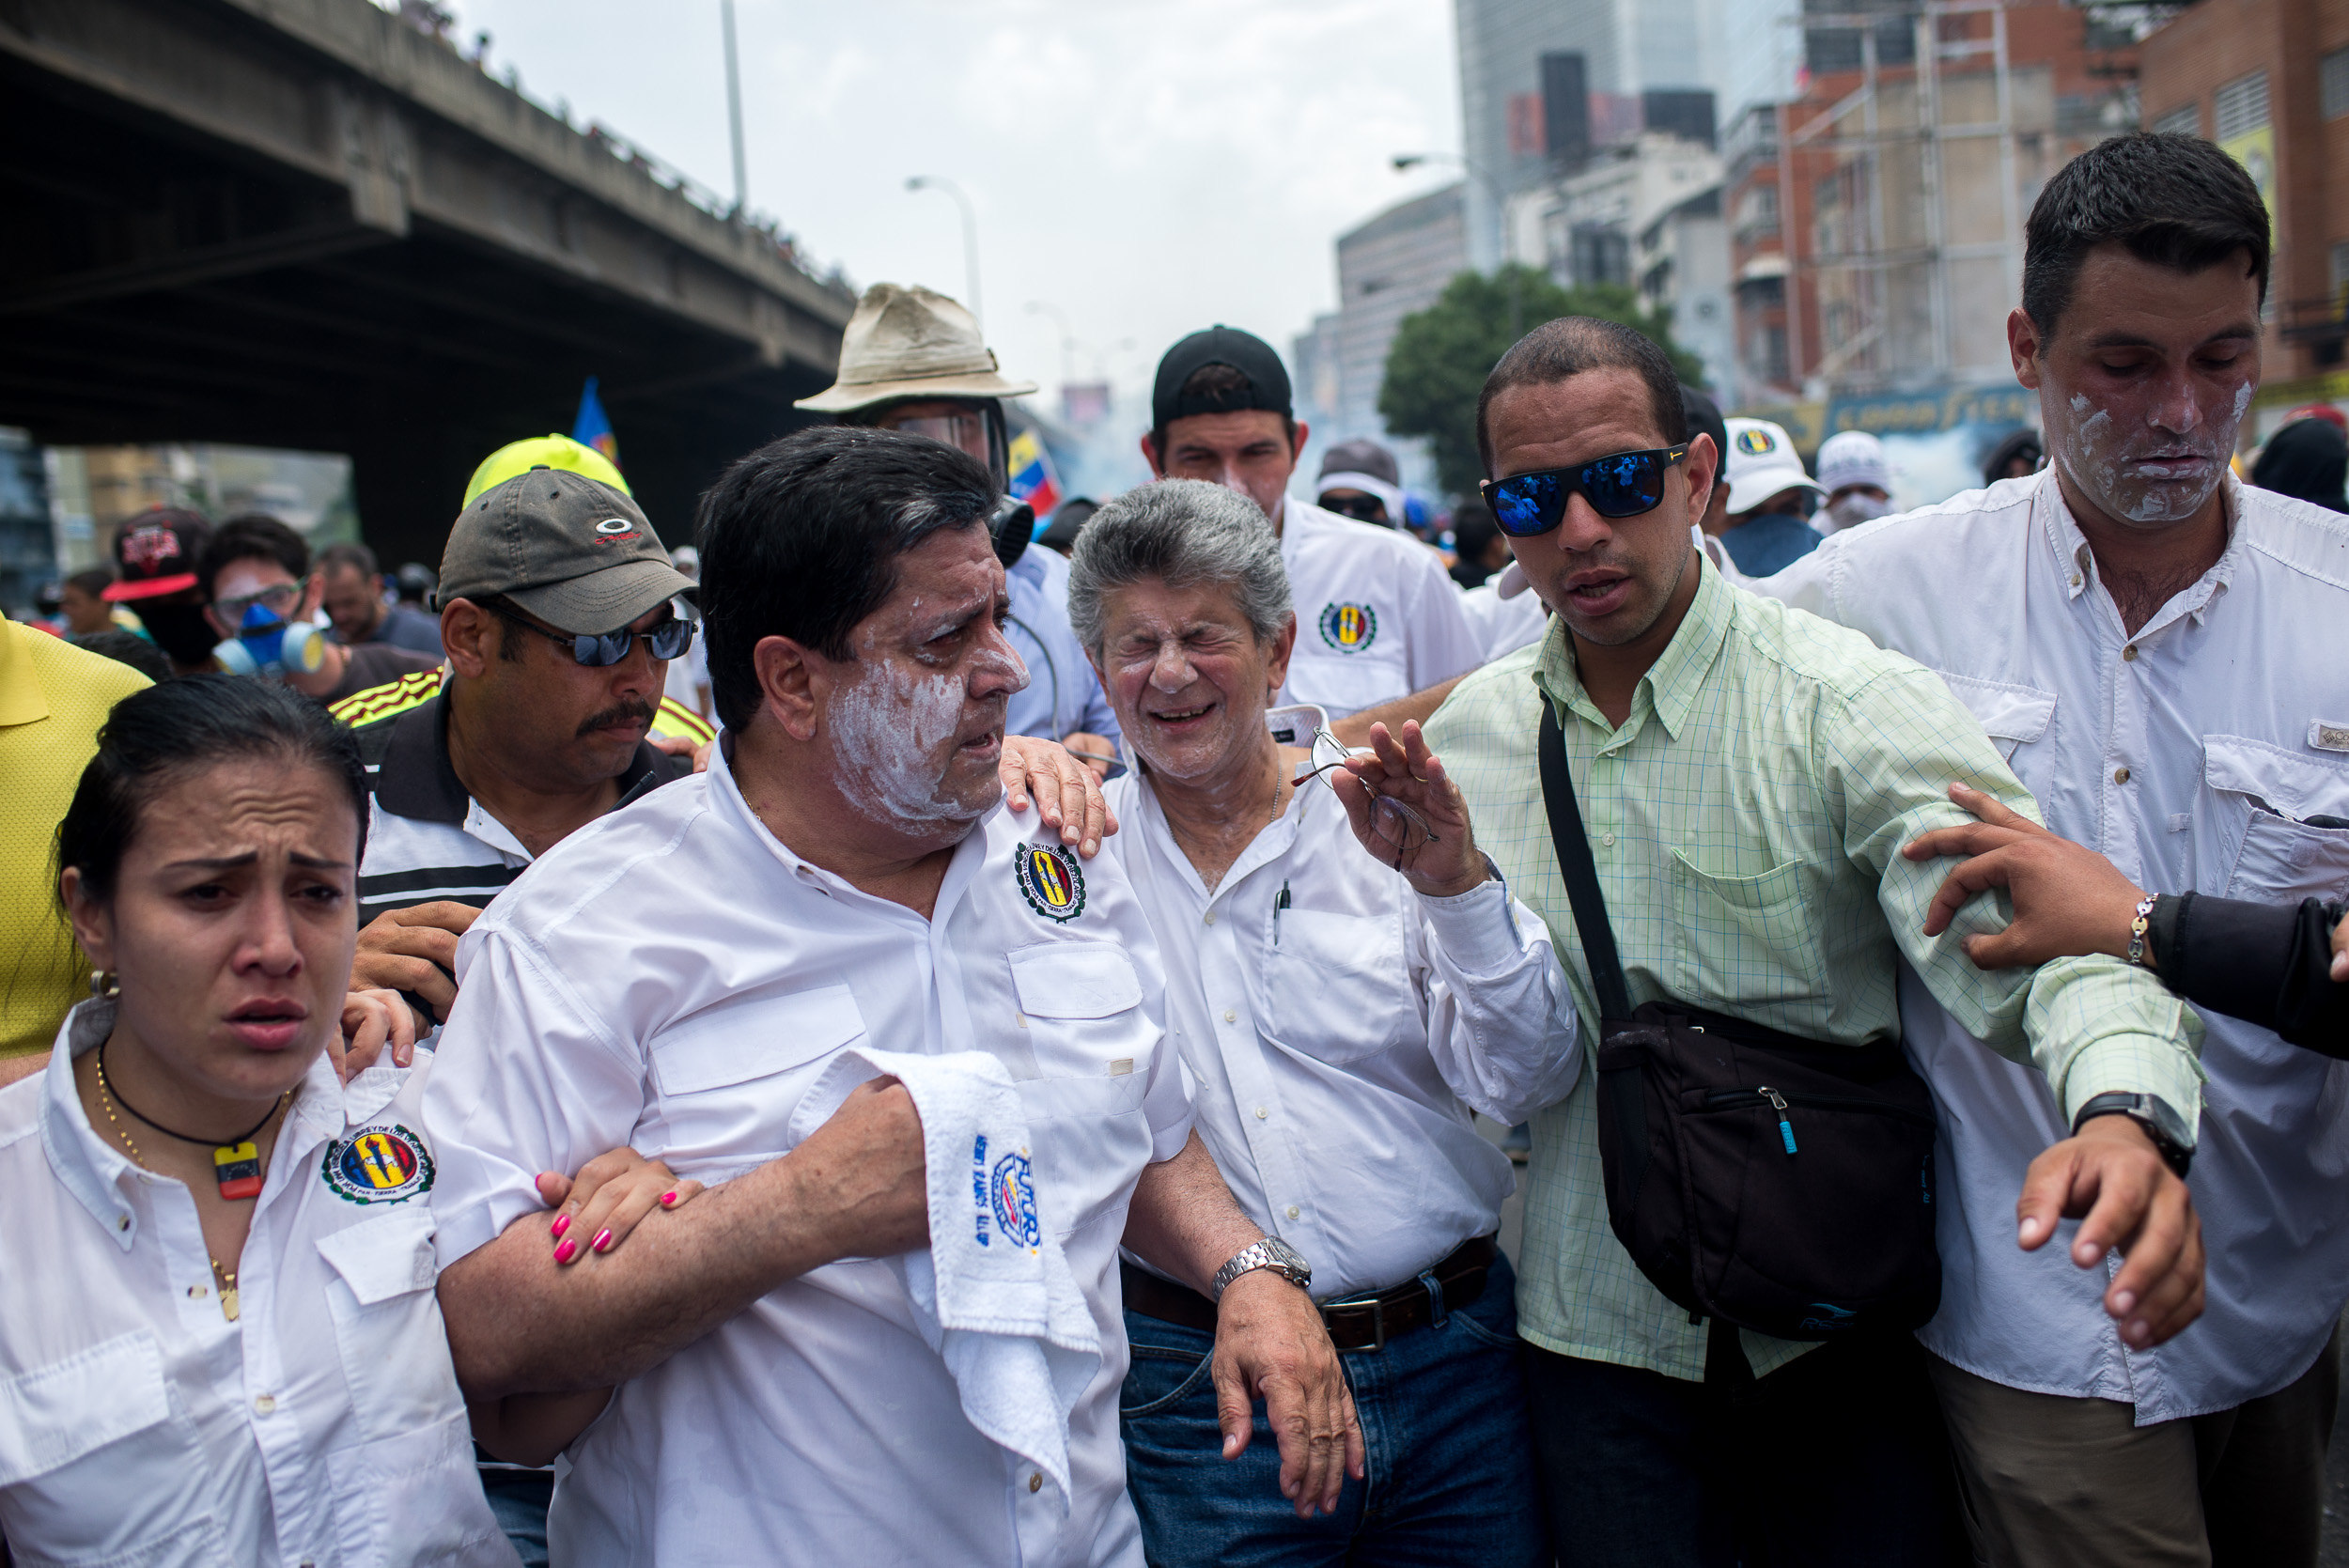 CAR006. CARACAS (VENEZUELA), 19/04/2017.- El expresidente del parlamento y líder opositor Henry Ramos Allup (c) reacciona a los gases lacrimógenos durante una manifestación opositora que intentaba llegar a la Defensoría del Pueblo hoy, miércoles 19 de abril de 2017, en Caracas (Venezuela.). La policía disolvió hoy con gases lacrimógenos una de las marchas opositoras en el centro de Caracas que pretendía llegar a la sede de la Defensoría del Pueblo, mientras que desde otra de las concentraciones antichavistas en esa zona de la ciudad se reportó una persona muerta. Venezuela es escenario el día de hoy de marchas a favor y en contra del Gobierno a las que cada uno de los bandos ha convocado para medir fuerzas en la calle. EFE/Manaure Quintero